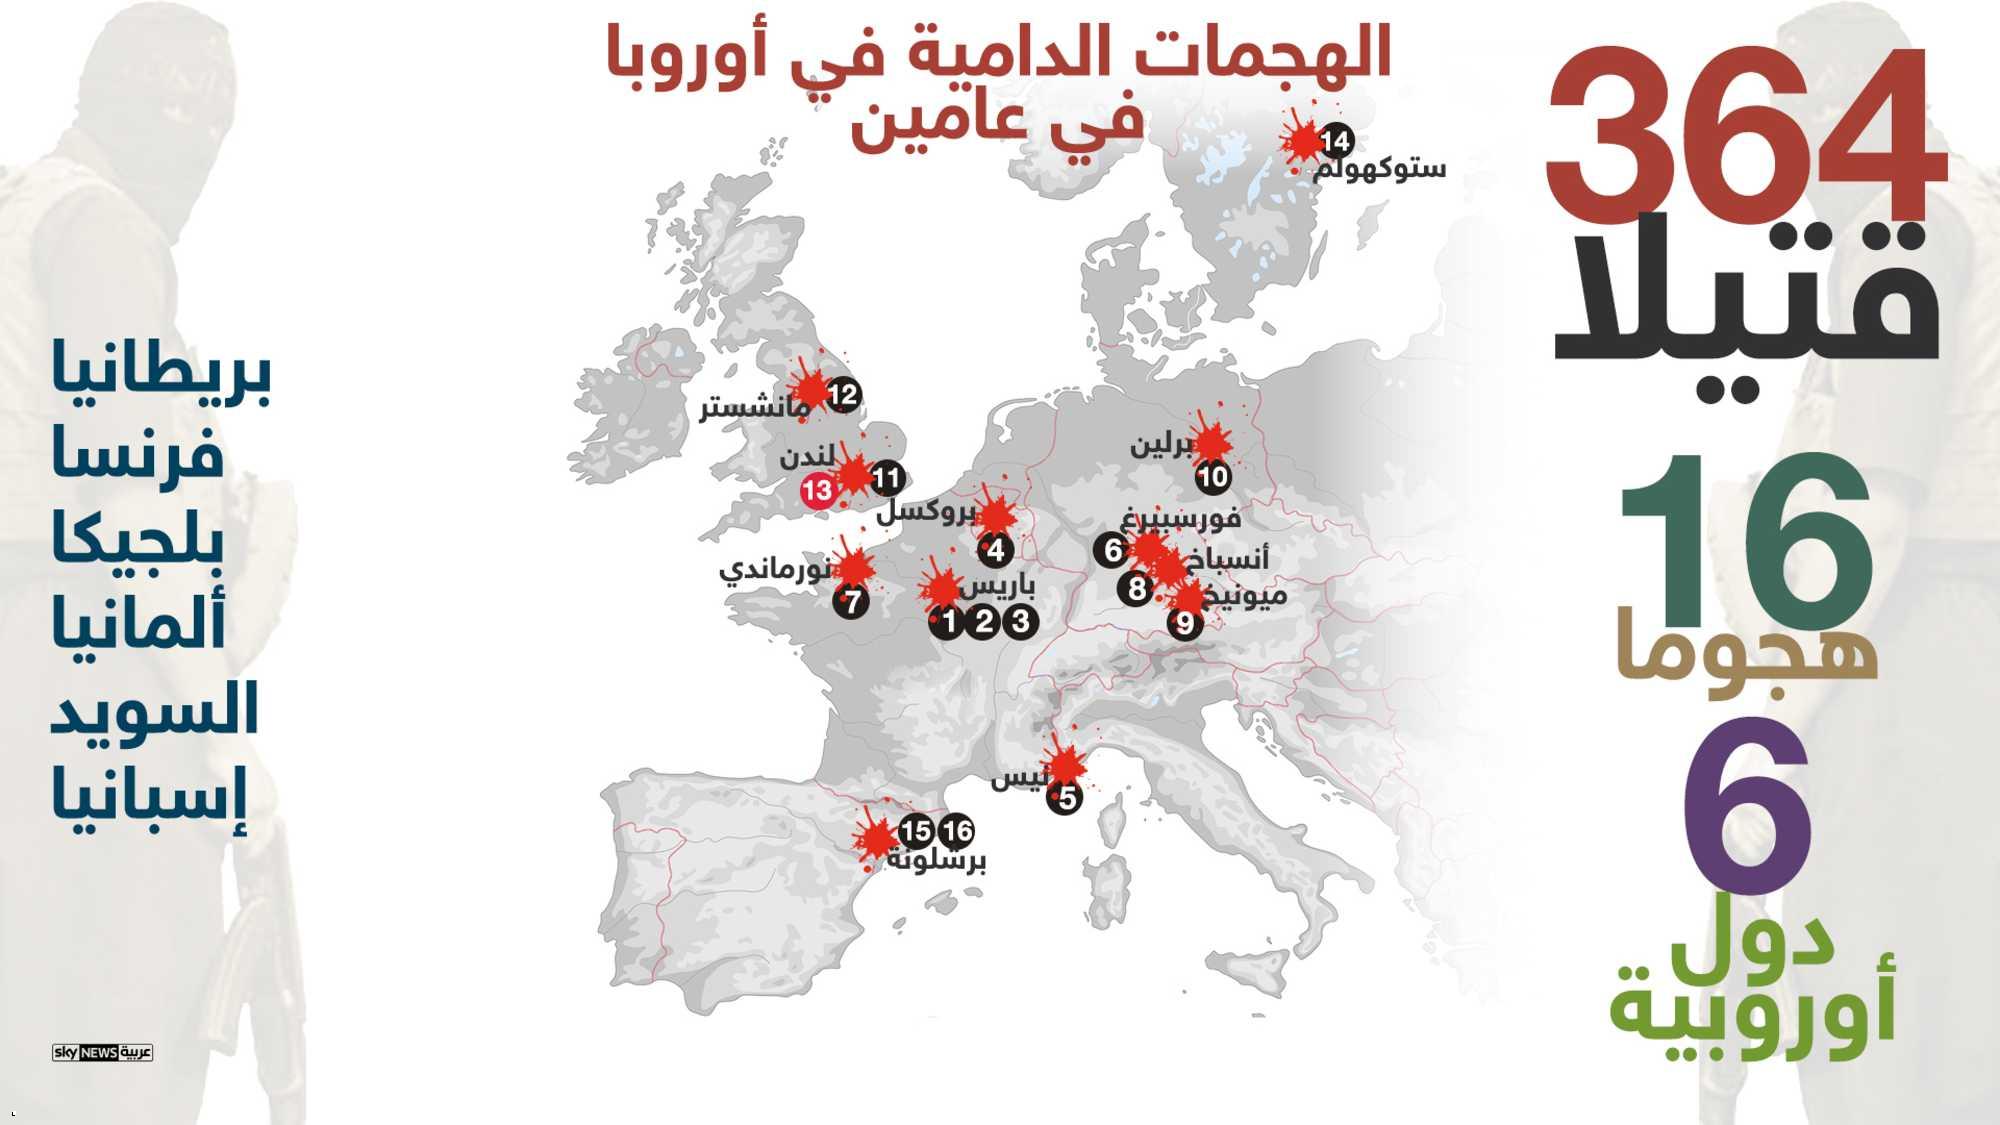 2- الهجمات الإرهابية فى أوروبا تخلف 364 قتيلا خلال عامين